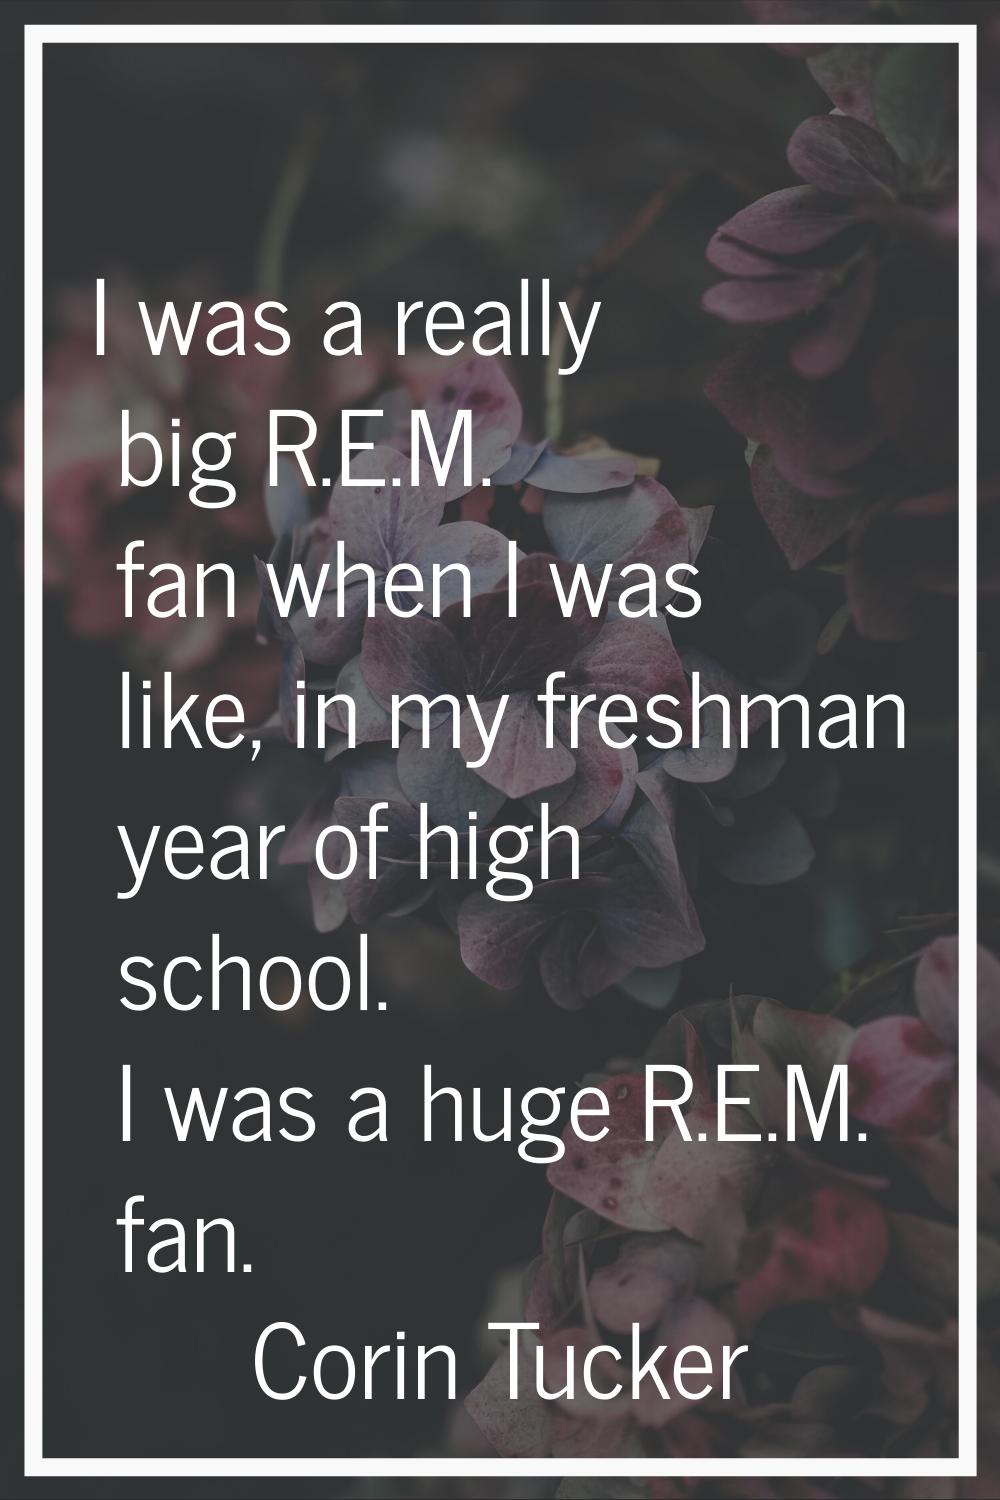 I was a really big R.E.M. fan when I was like, in my freshman year of high school. I was a huge R.E